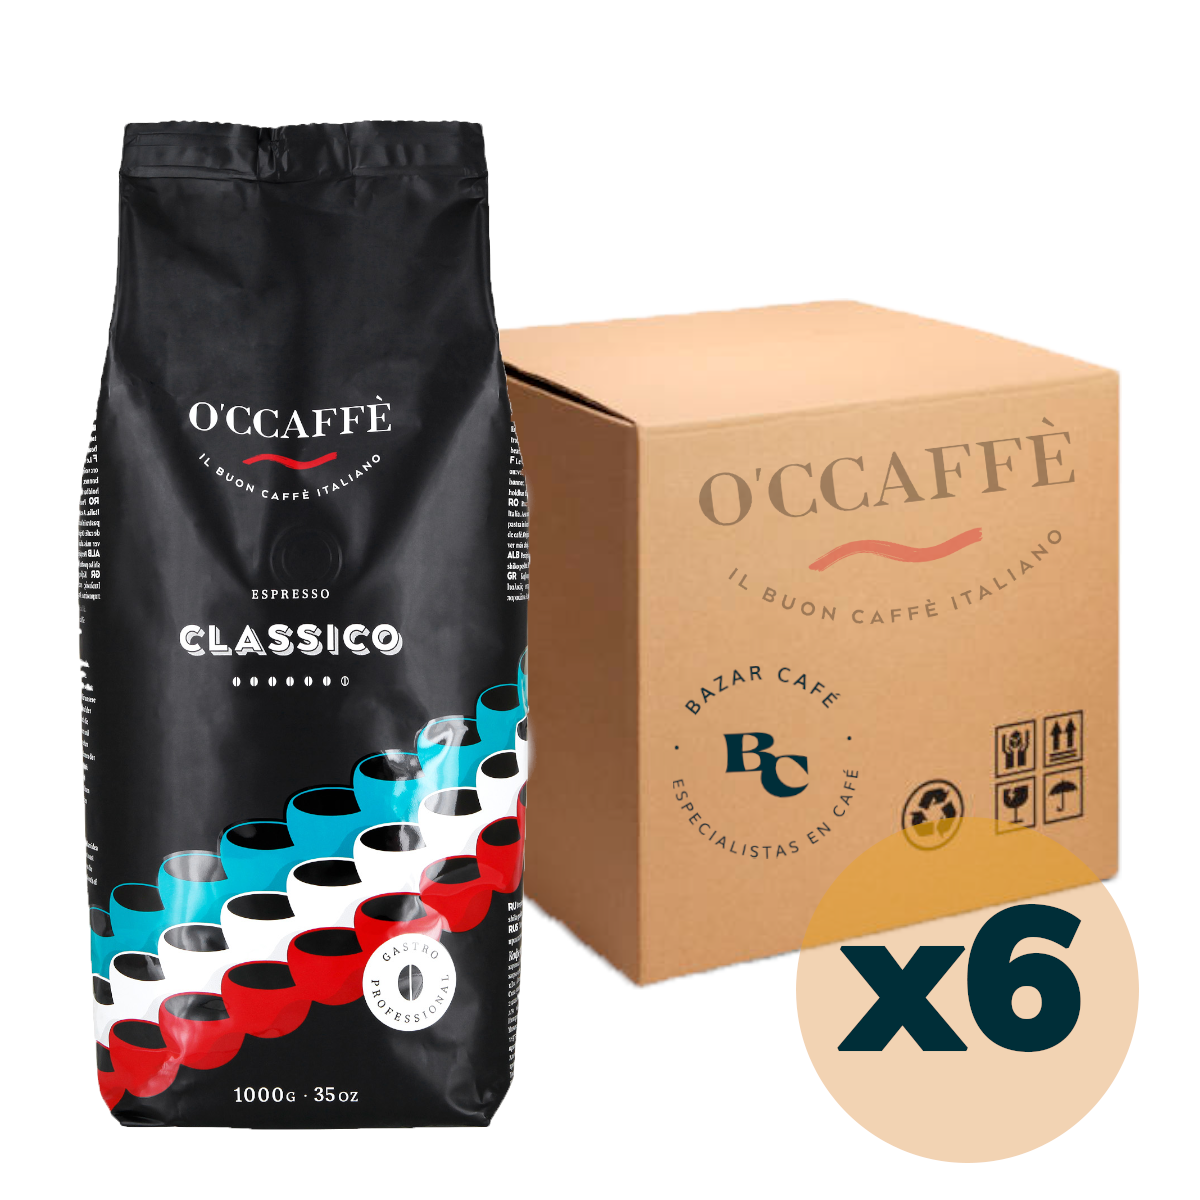 6 Kilos Occaffe Espresso Classico Professional 1 kg Grano Entero